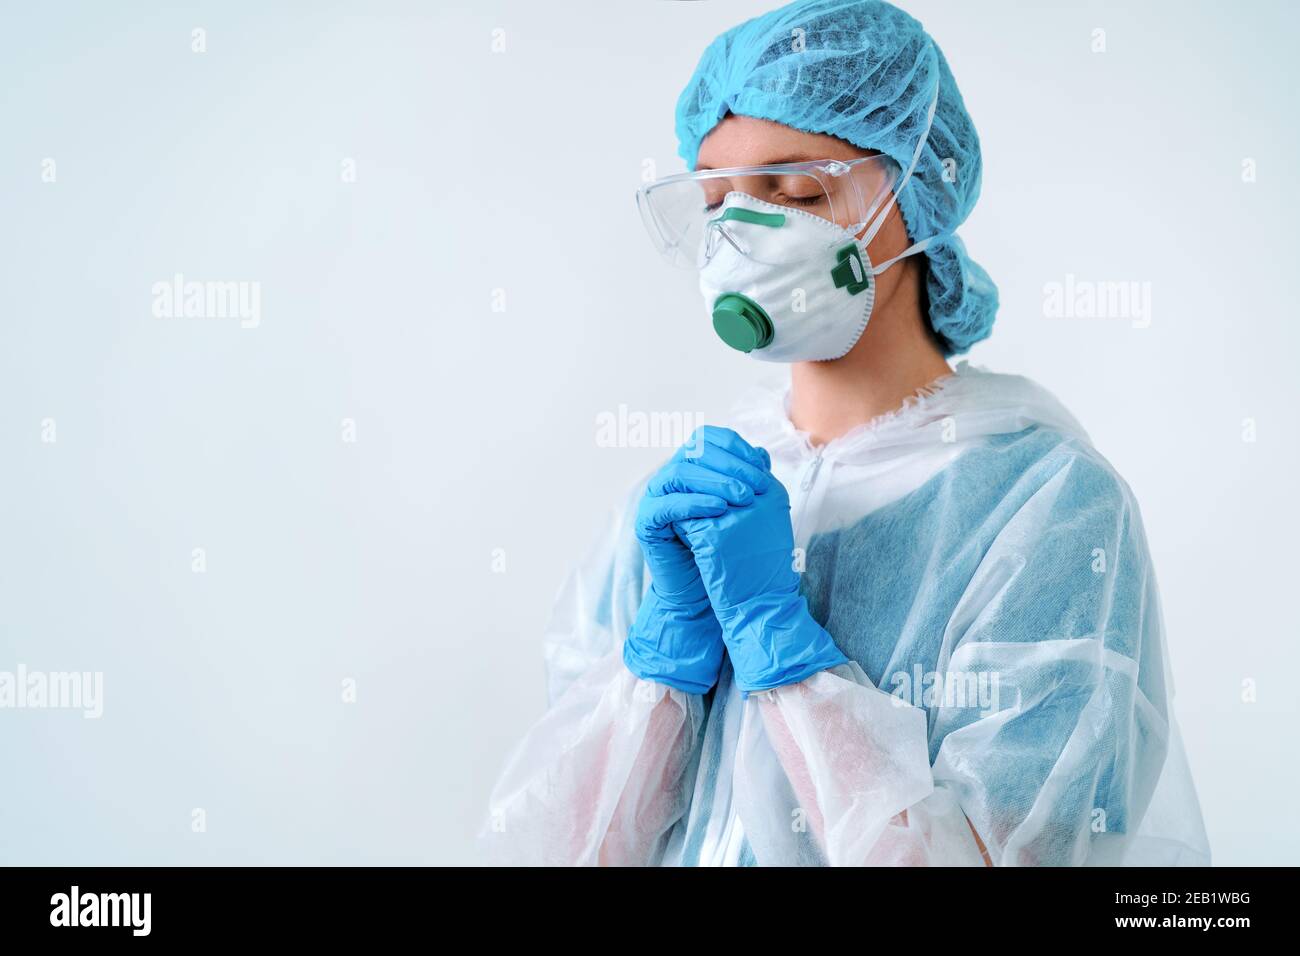 Operatore sanitario in tuta protettiva e maschera medica mettendo le mani insieme nella preghiera Foto Stock